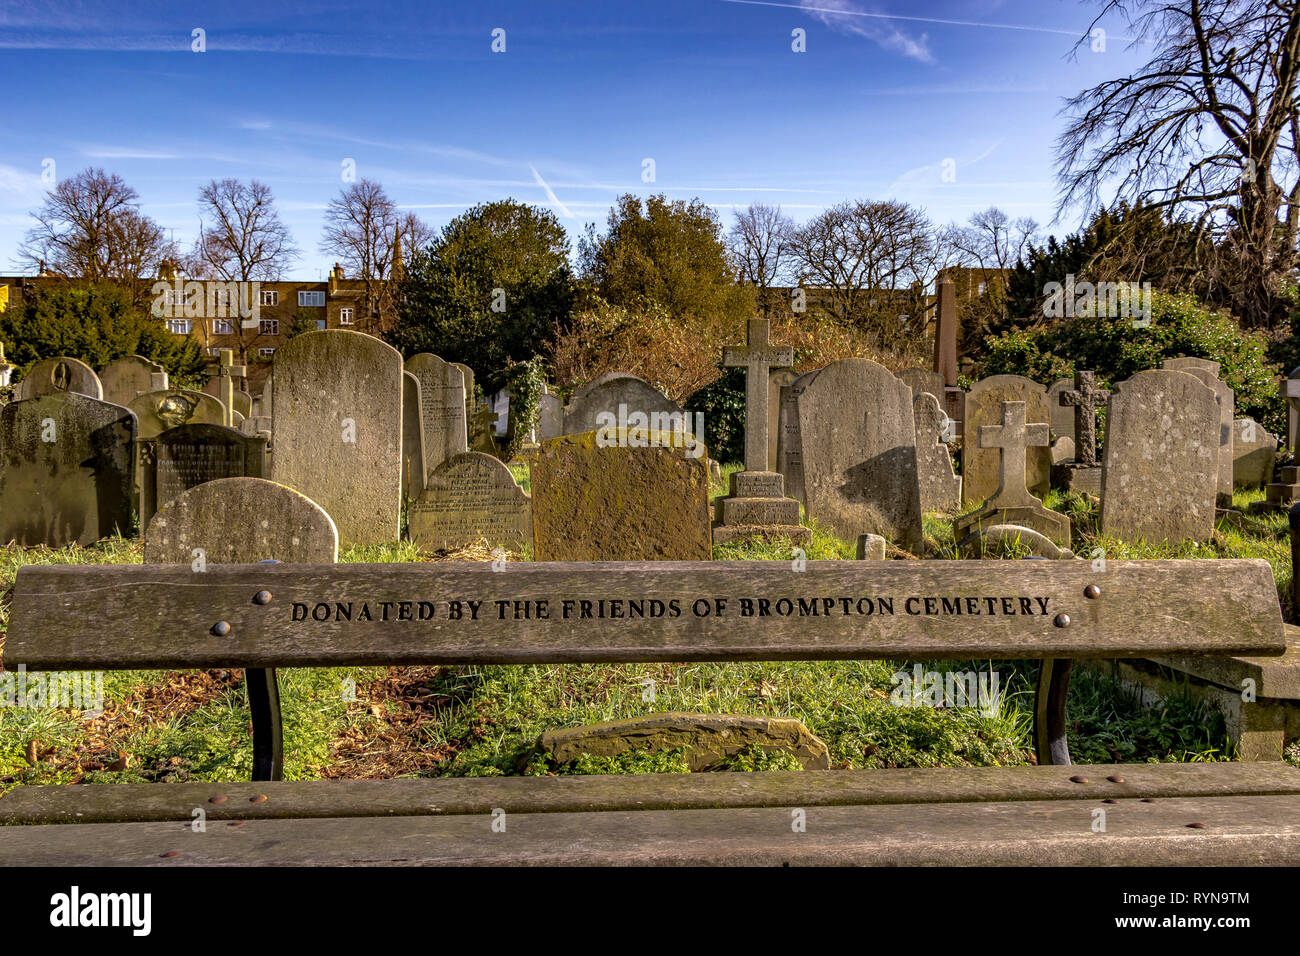 Le cimetière Brompton, un banc en bois donné par les amis du cimetière Brompton, se trouve dans le quartier royal de Kensington et Chelsea, Londres, Royaume-Uni Banque D'Images